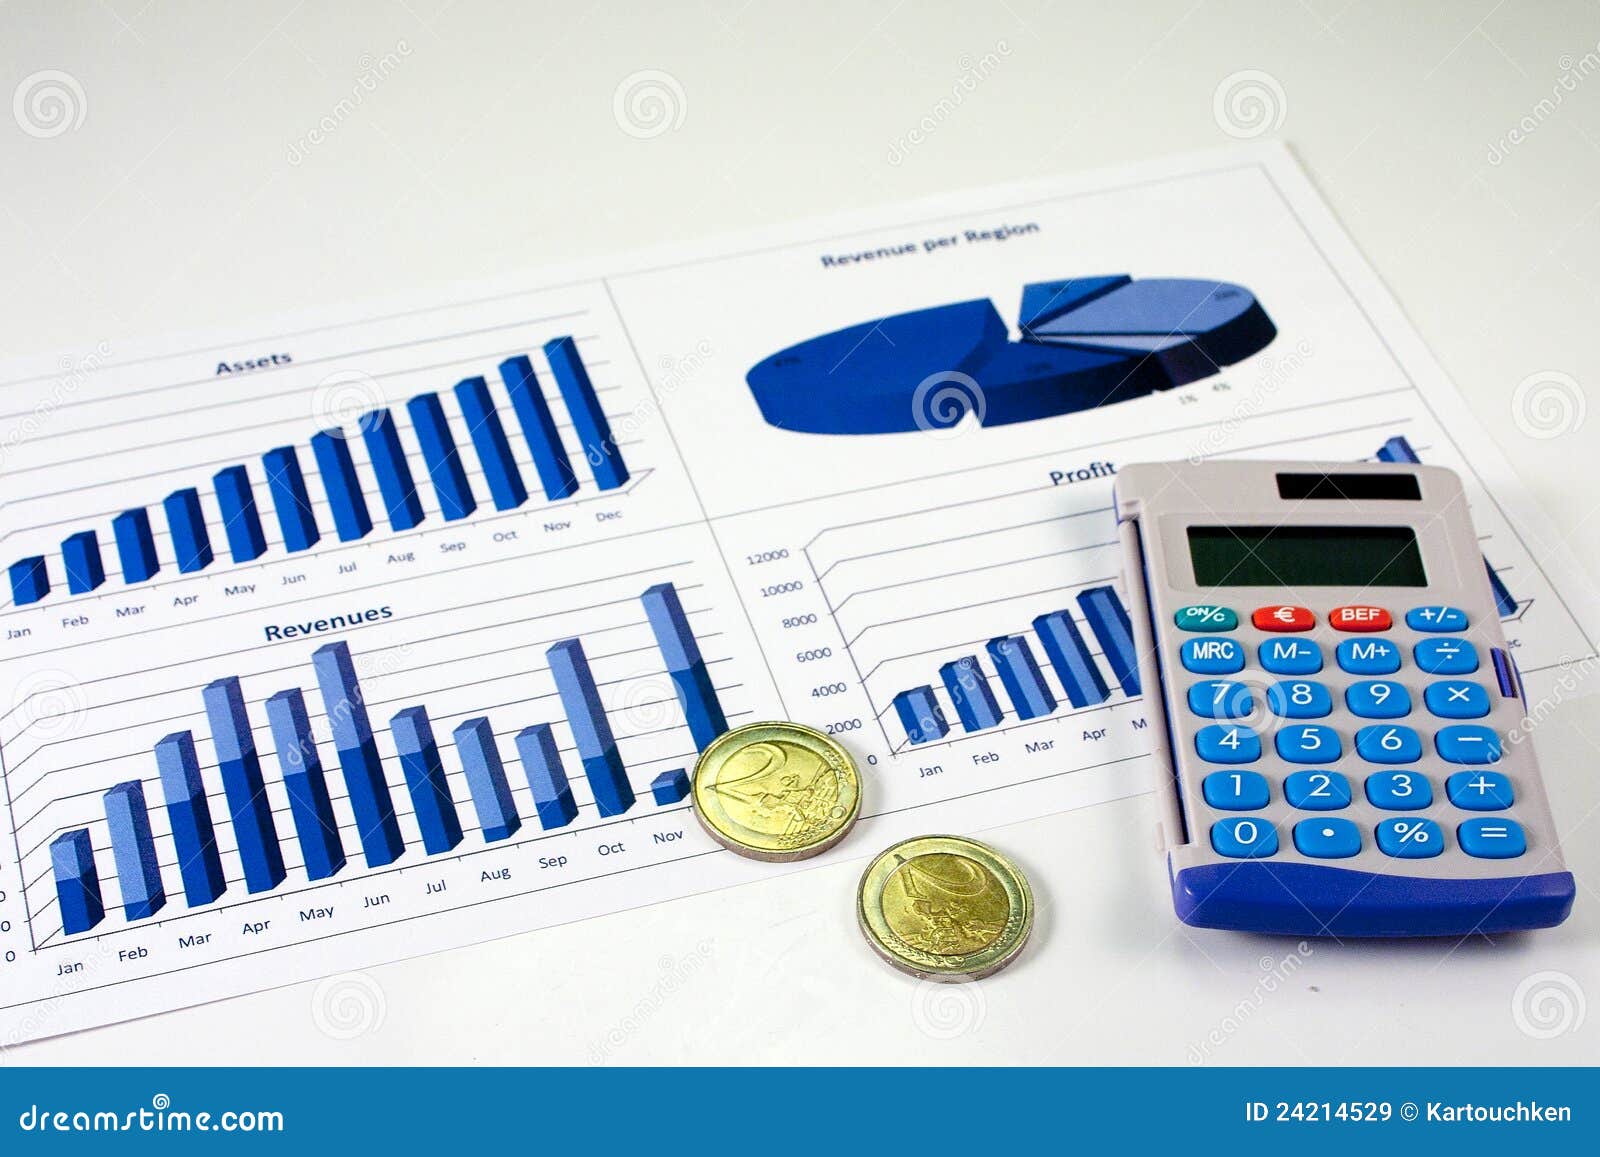 financial-management-chart-10-24214529.jpg